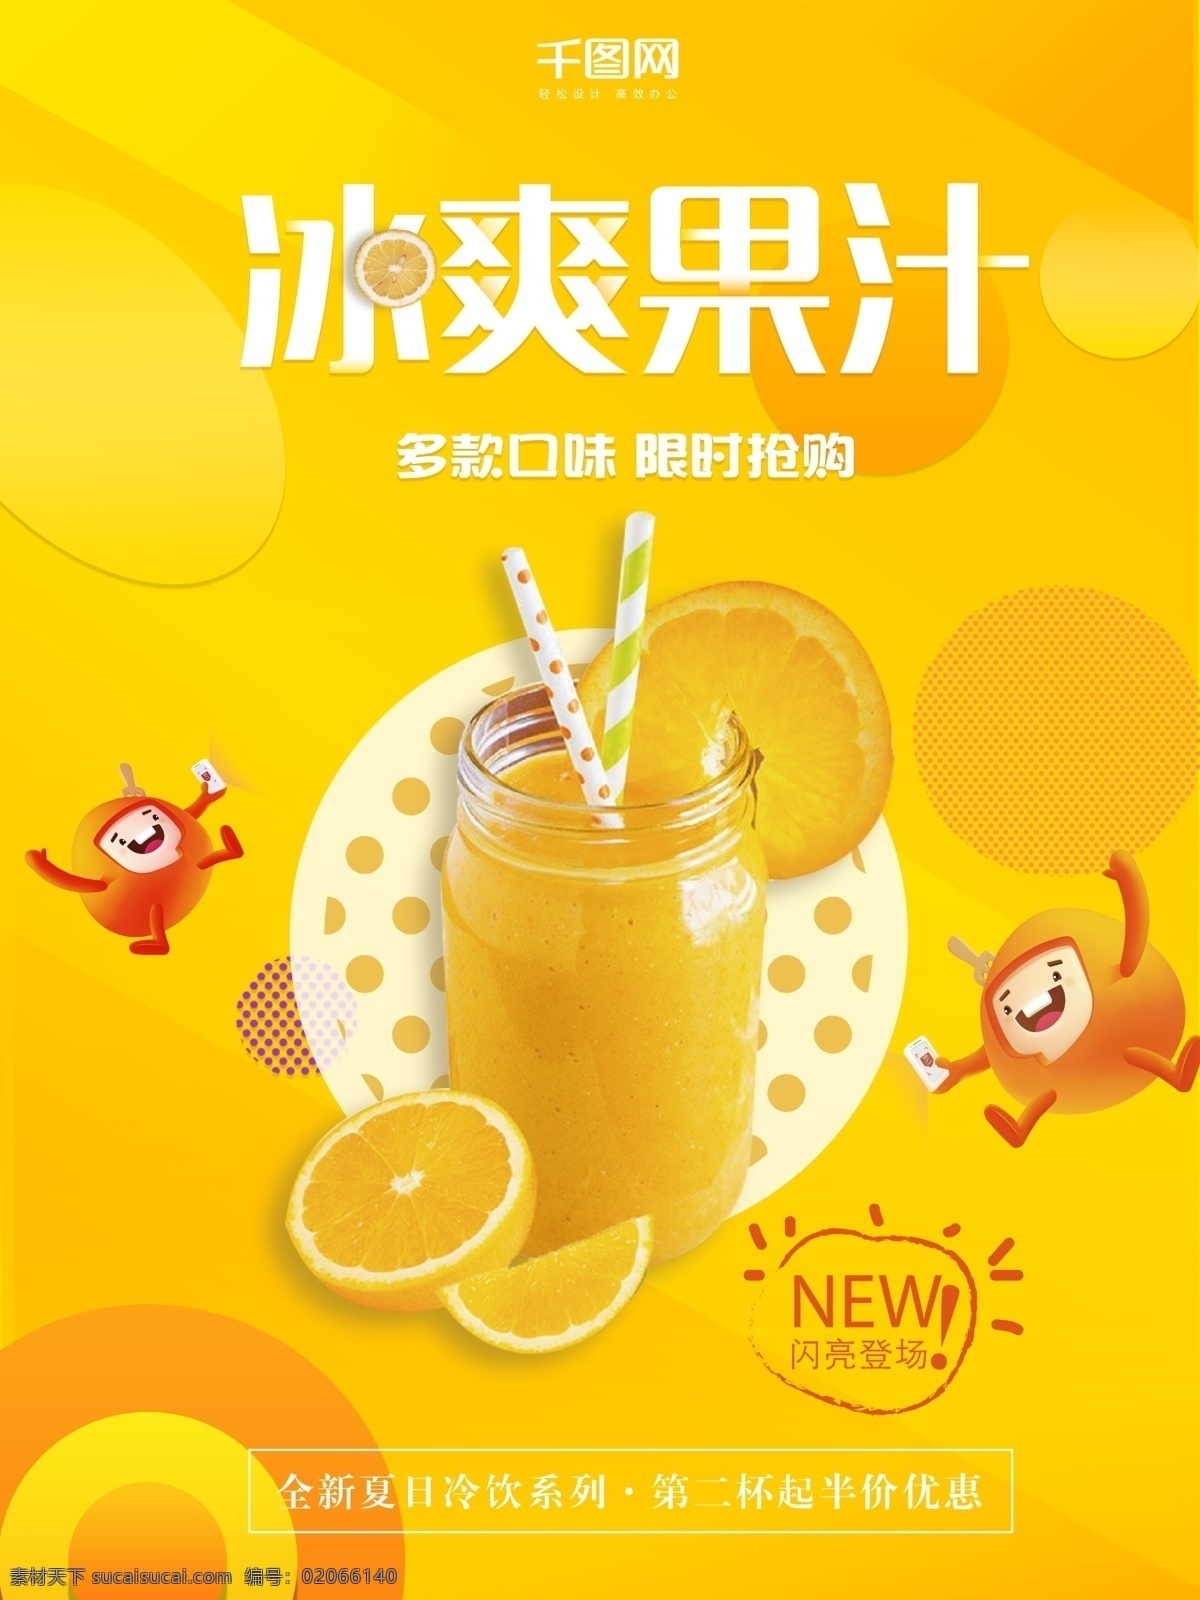 夏天 冷饮 果汁 橙色 简约 海报 模板 促销 黄色 促销海报 美食 冷饮海报 果汁橙色